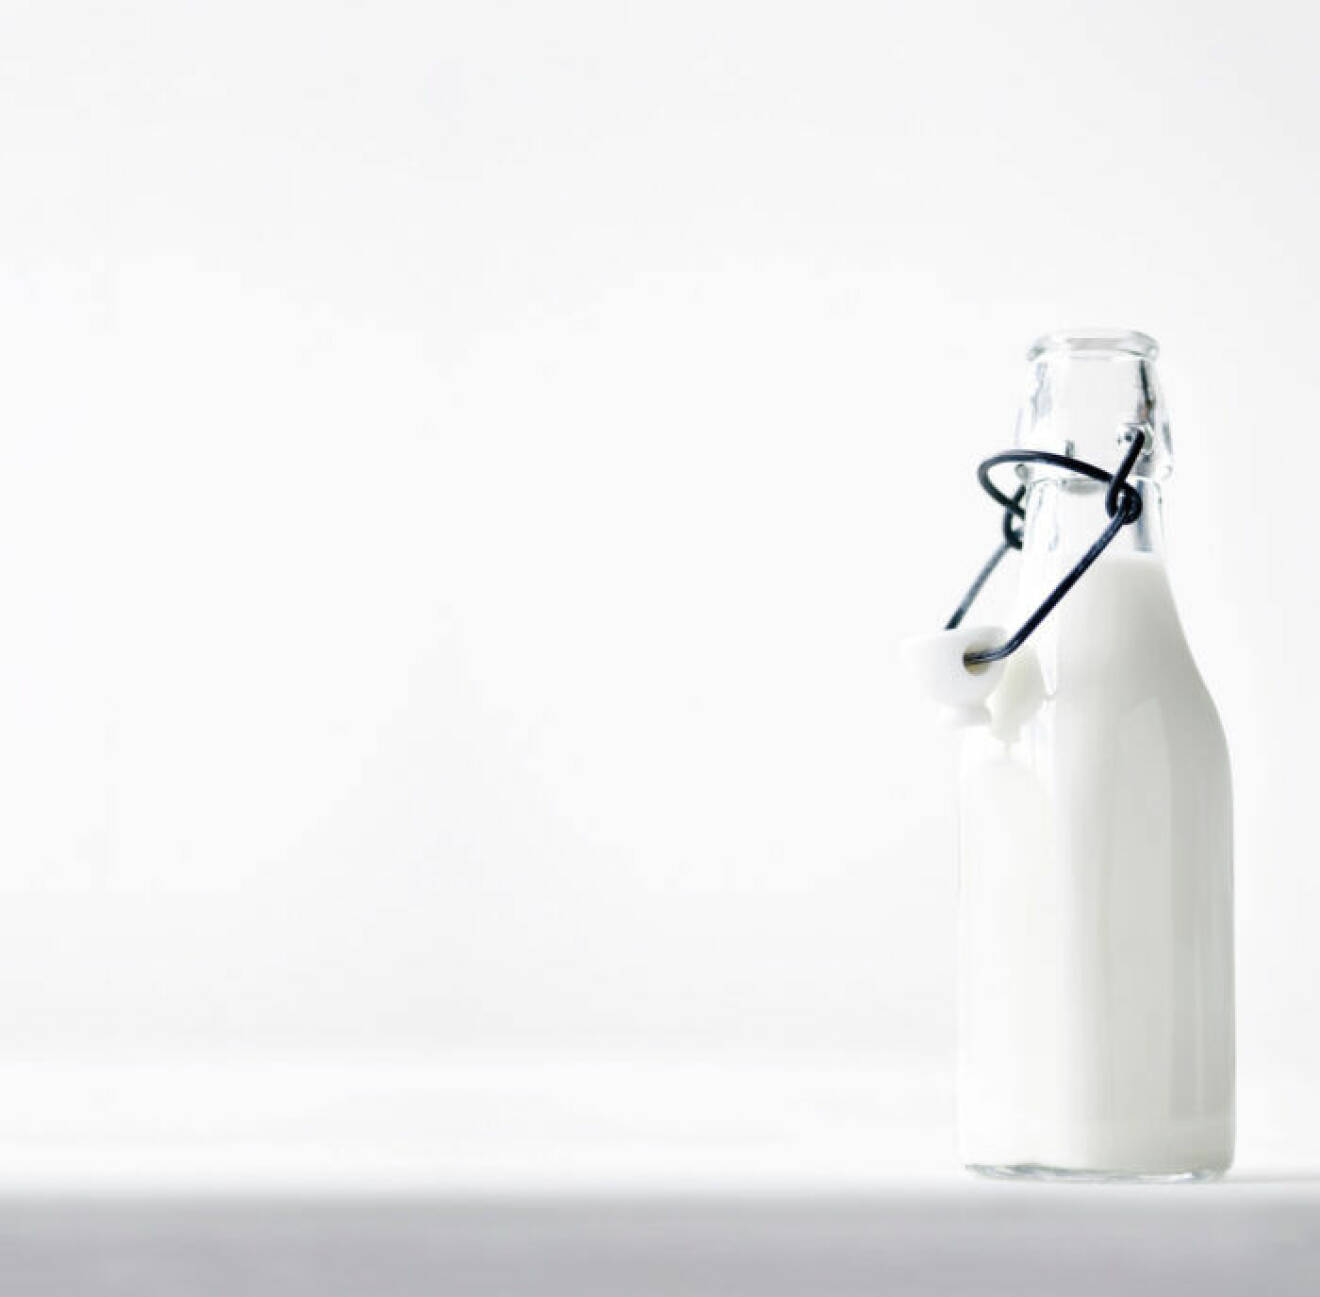 Växtbaserad mjölk